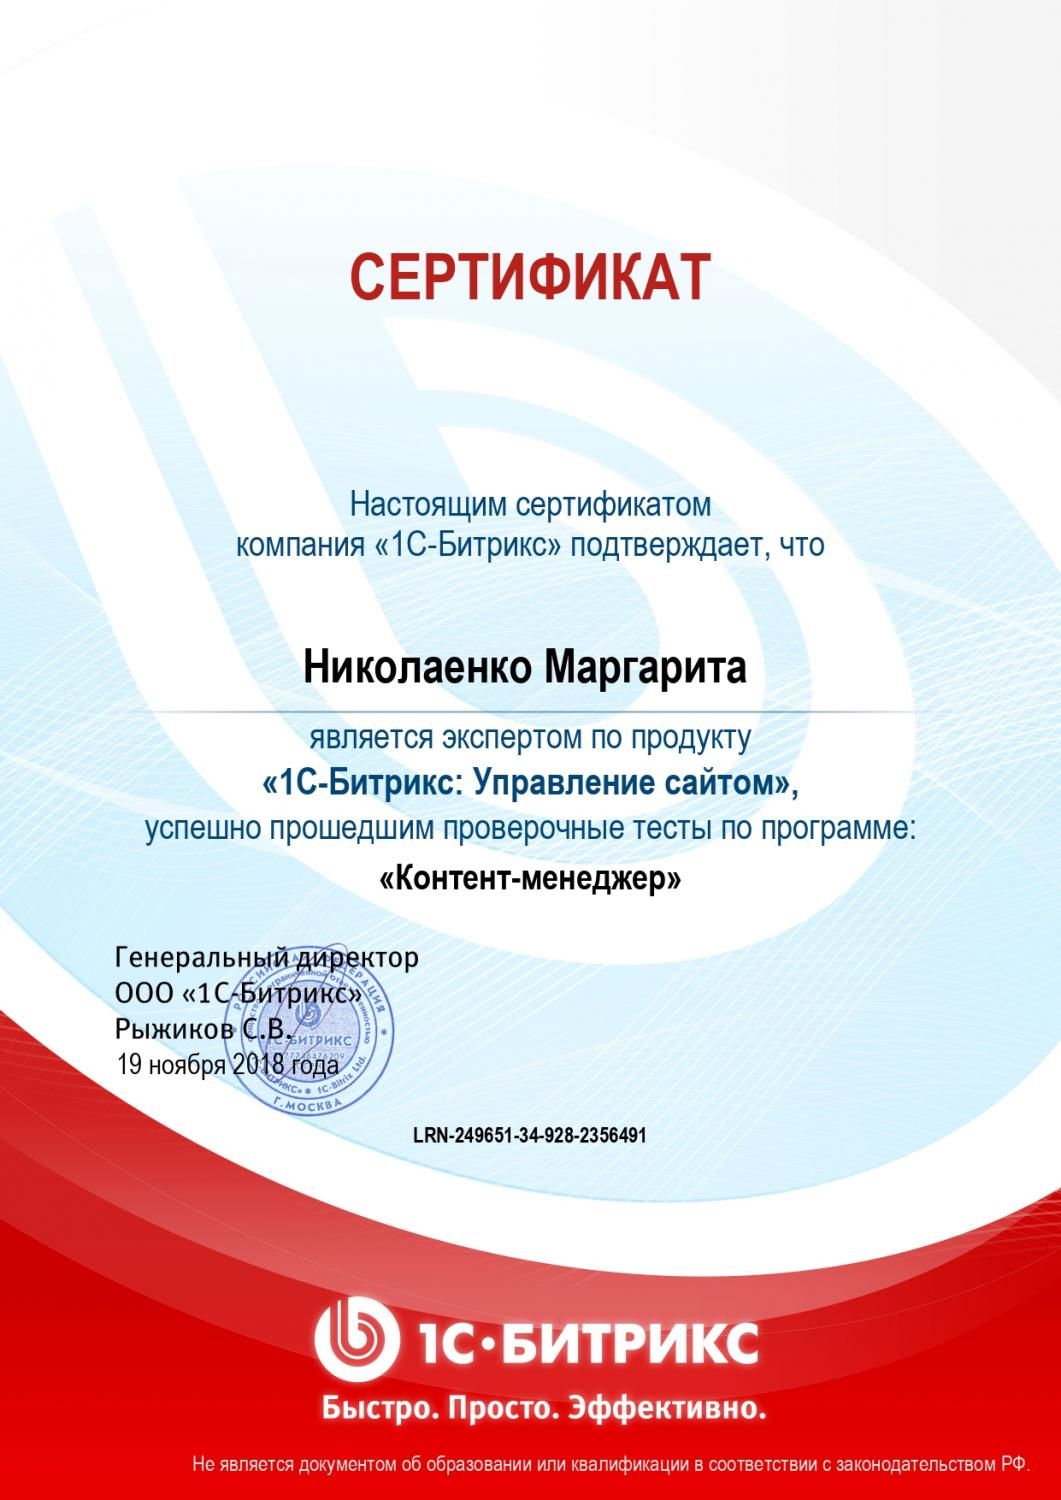 Сертификат эксперта по программе "Контент-менеджер" - Николаенко М. в Перми